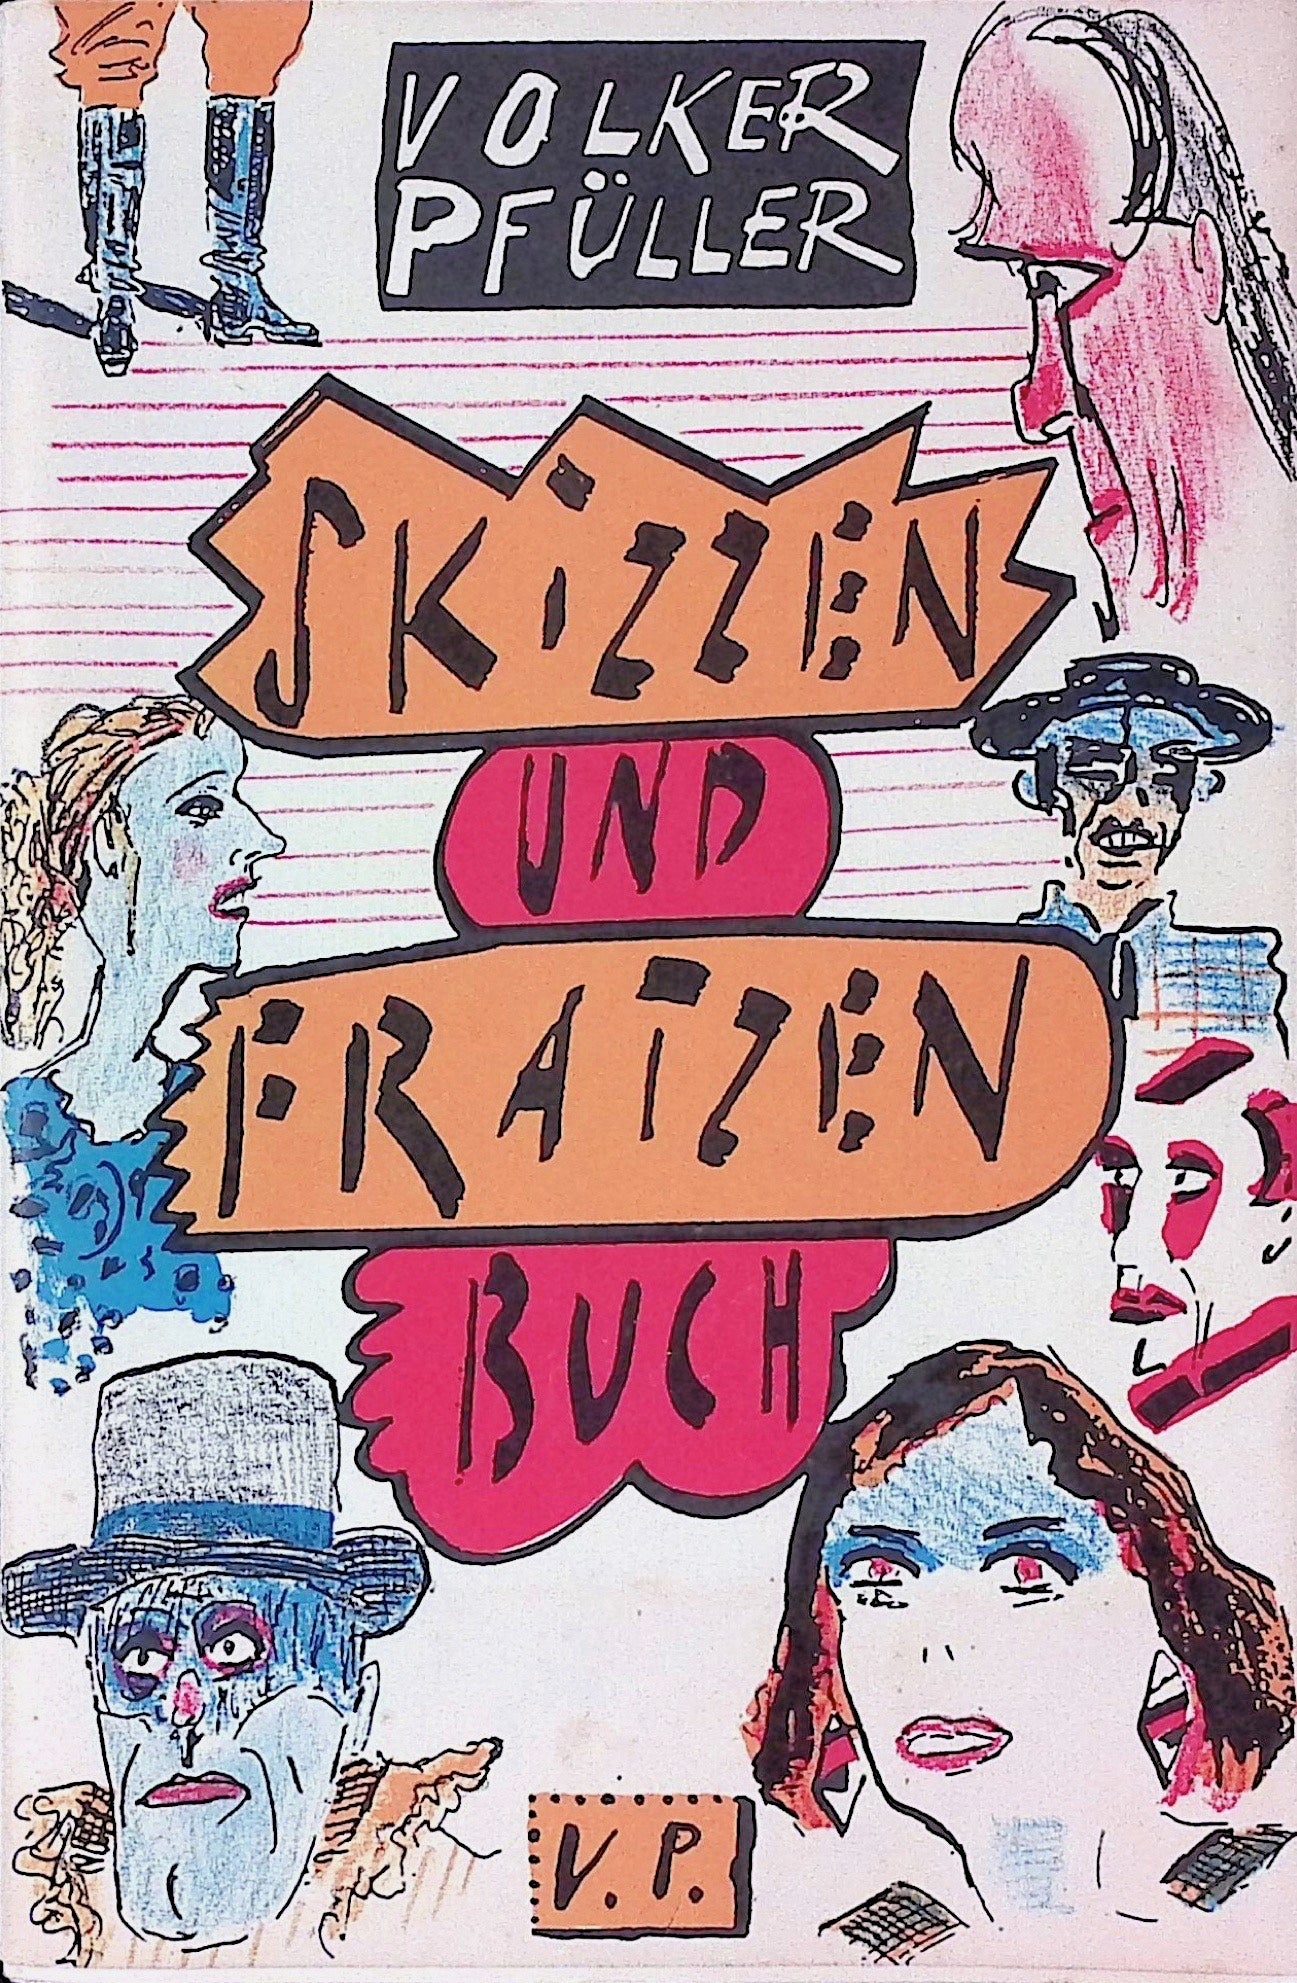 Skizzen Und Fratzen Buch - Pfuller, Volker